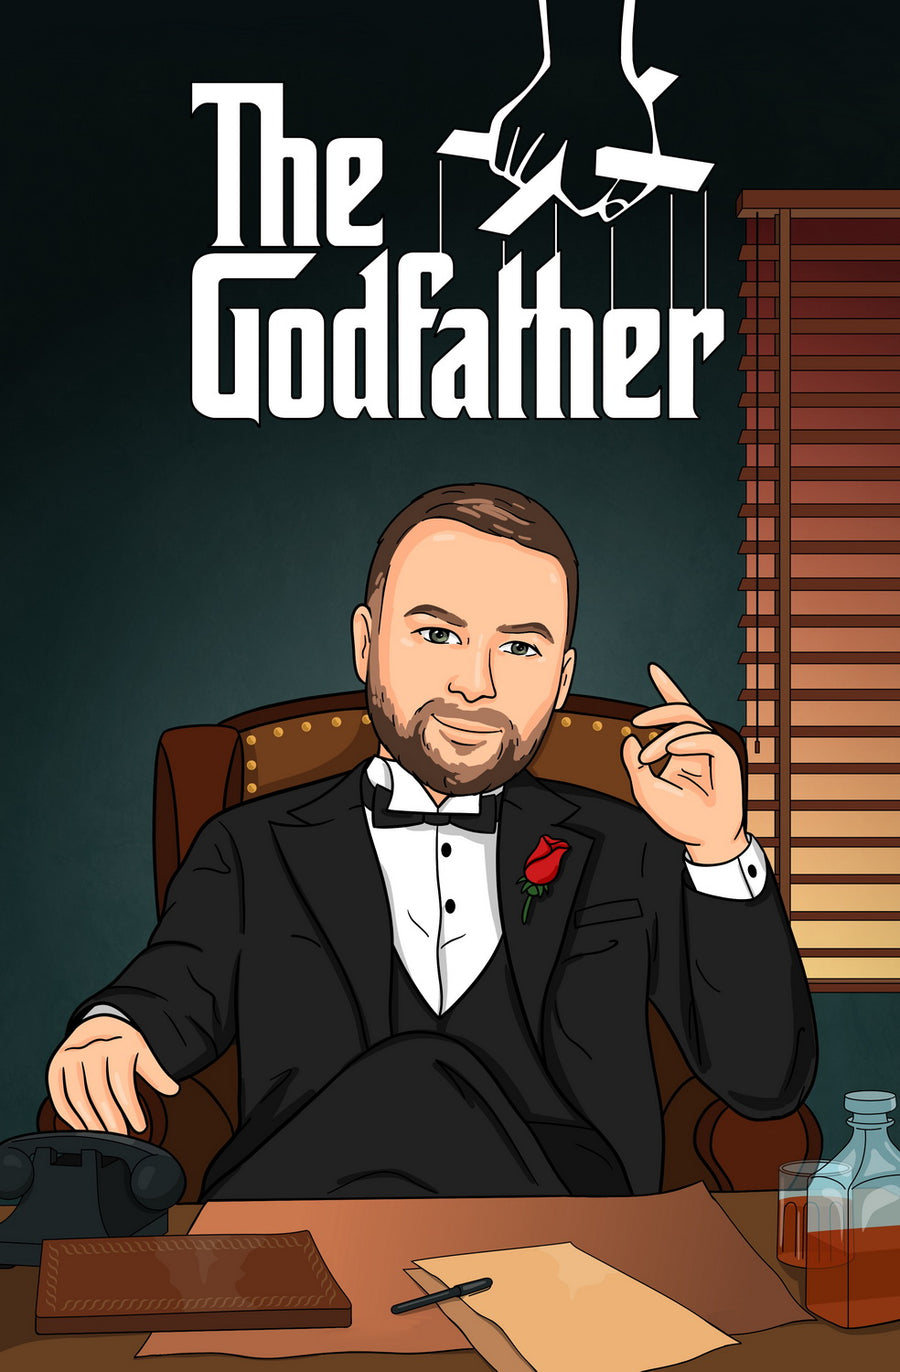 The Godfather - personalizowany obraz, cartoonizowany portret